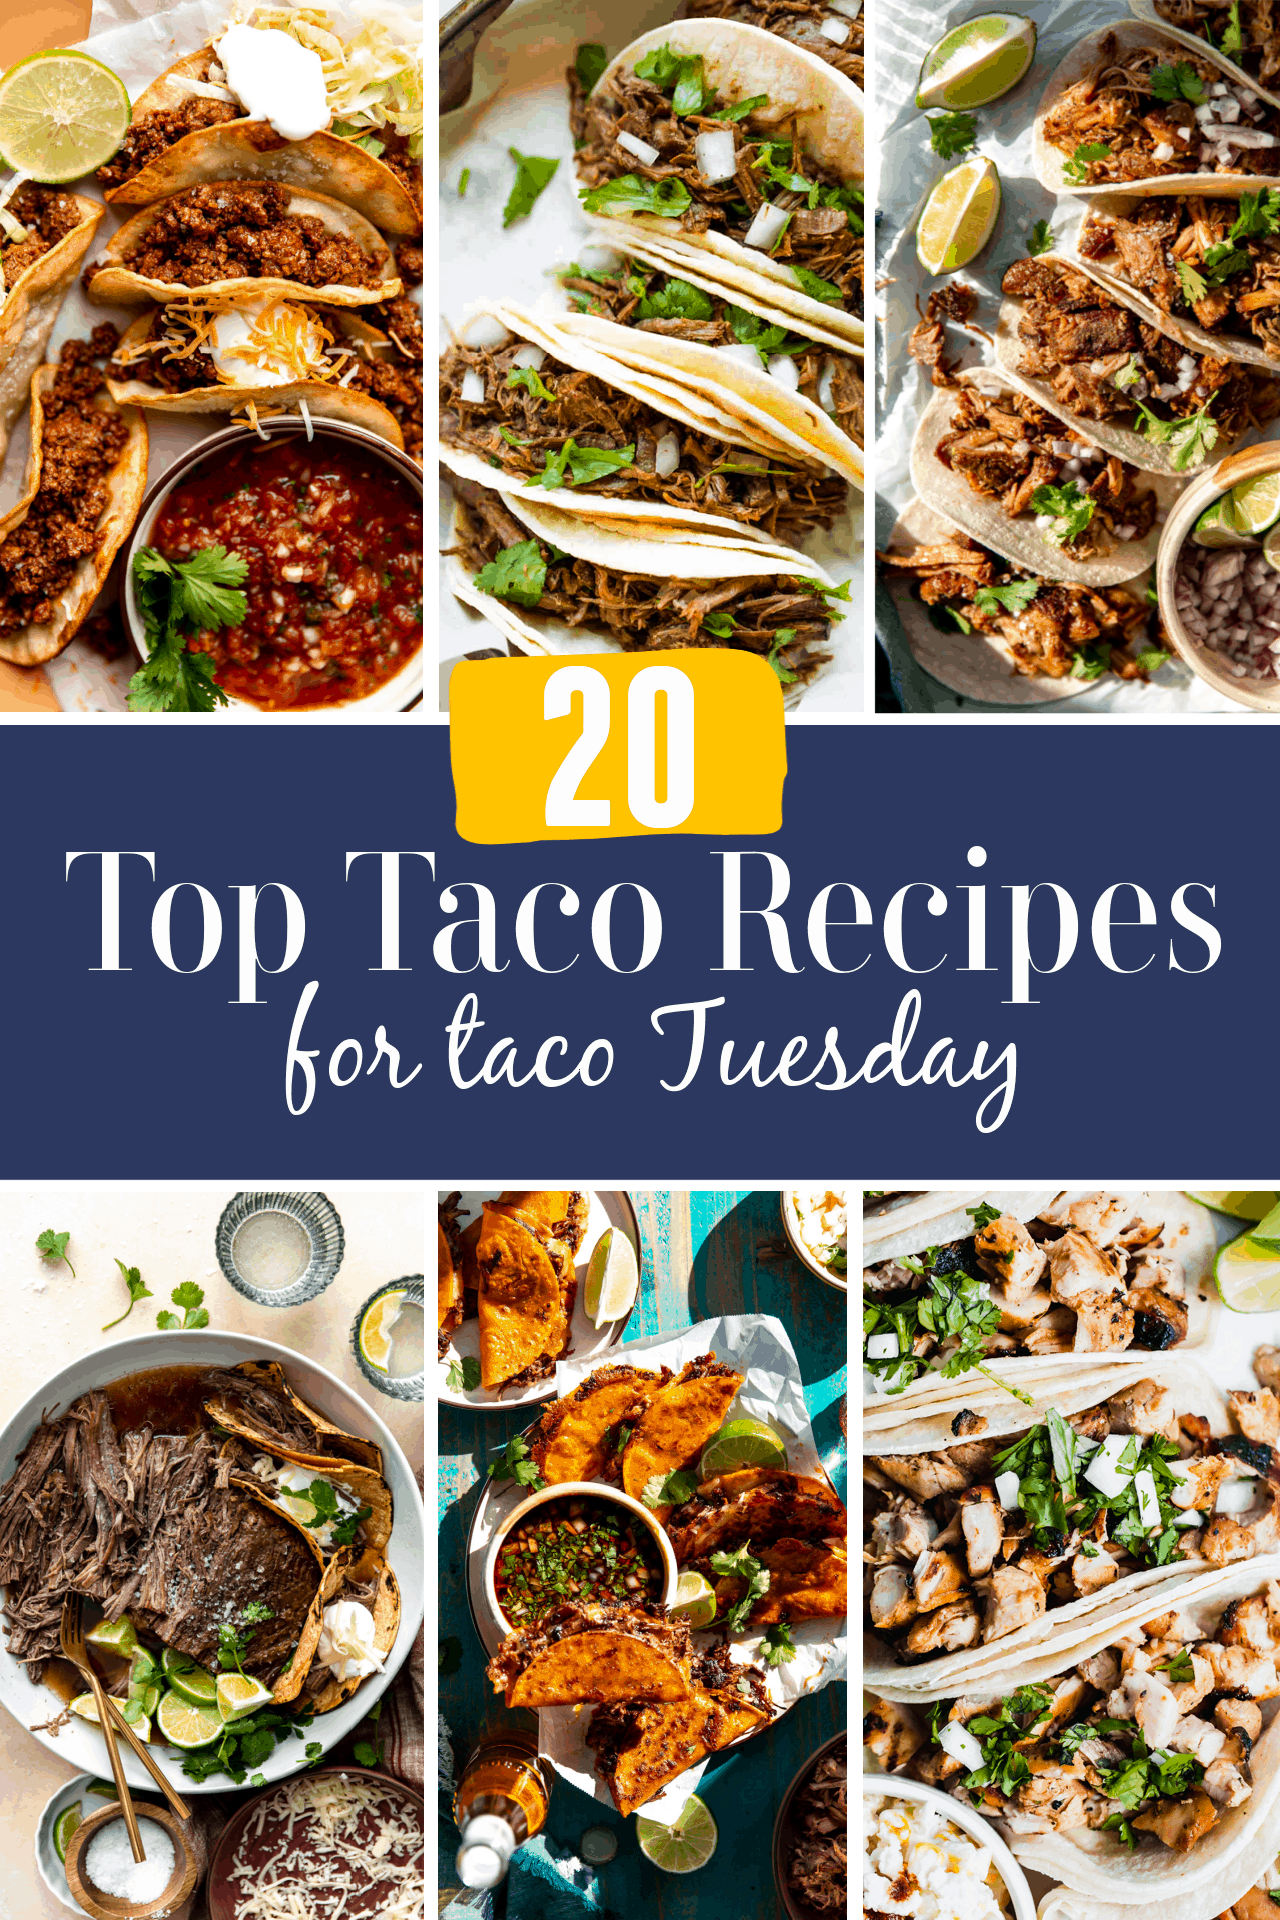 Taco round up image montrant les meilleures images de recettes de tacos.